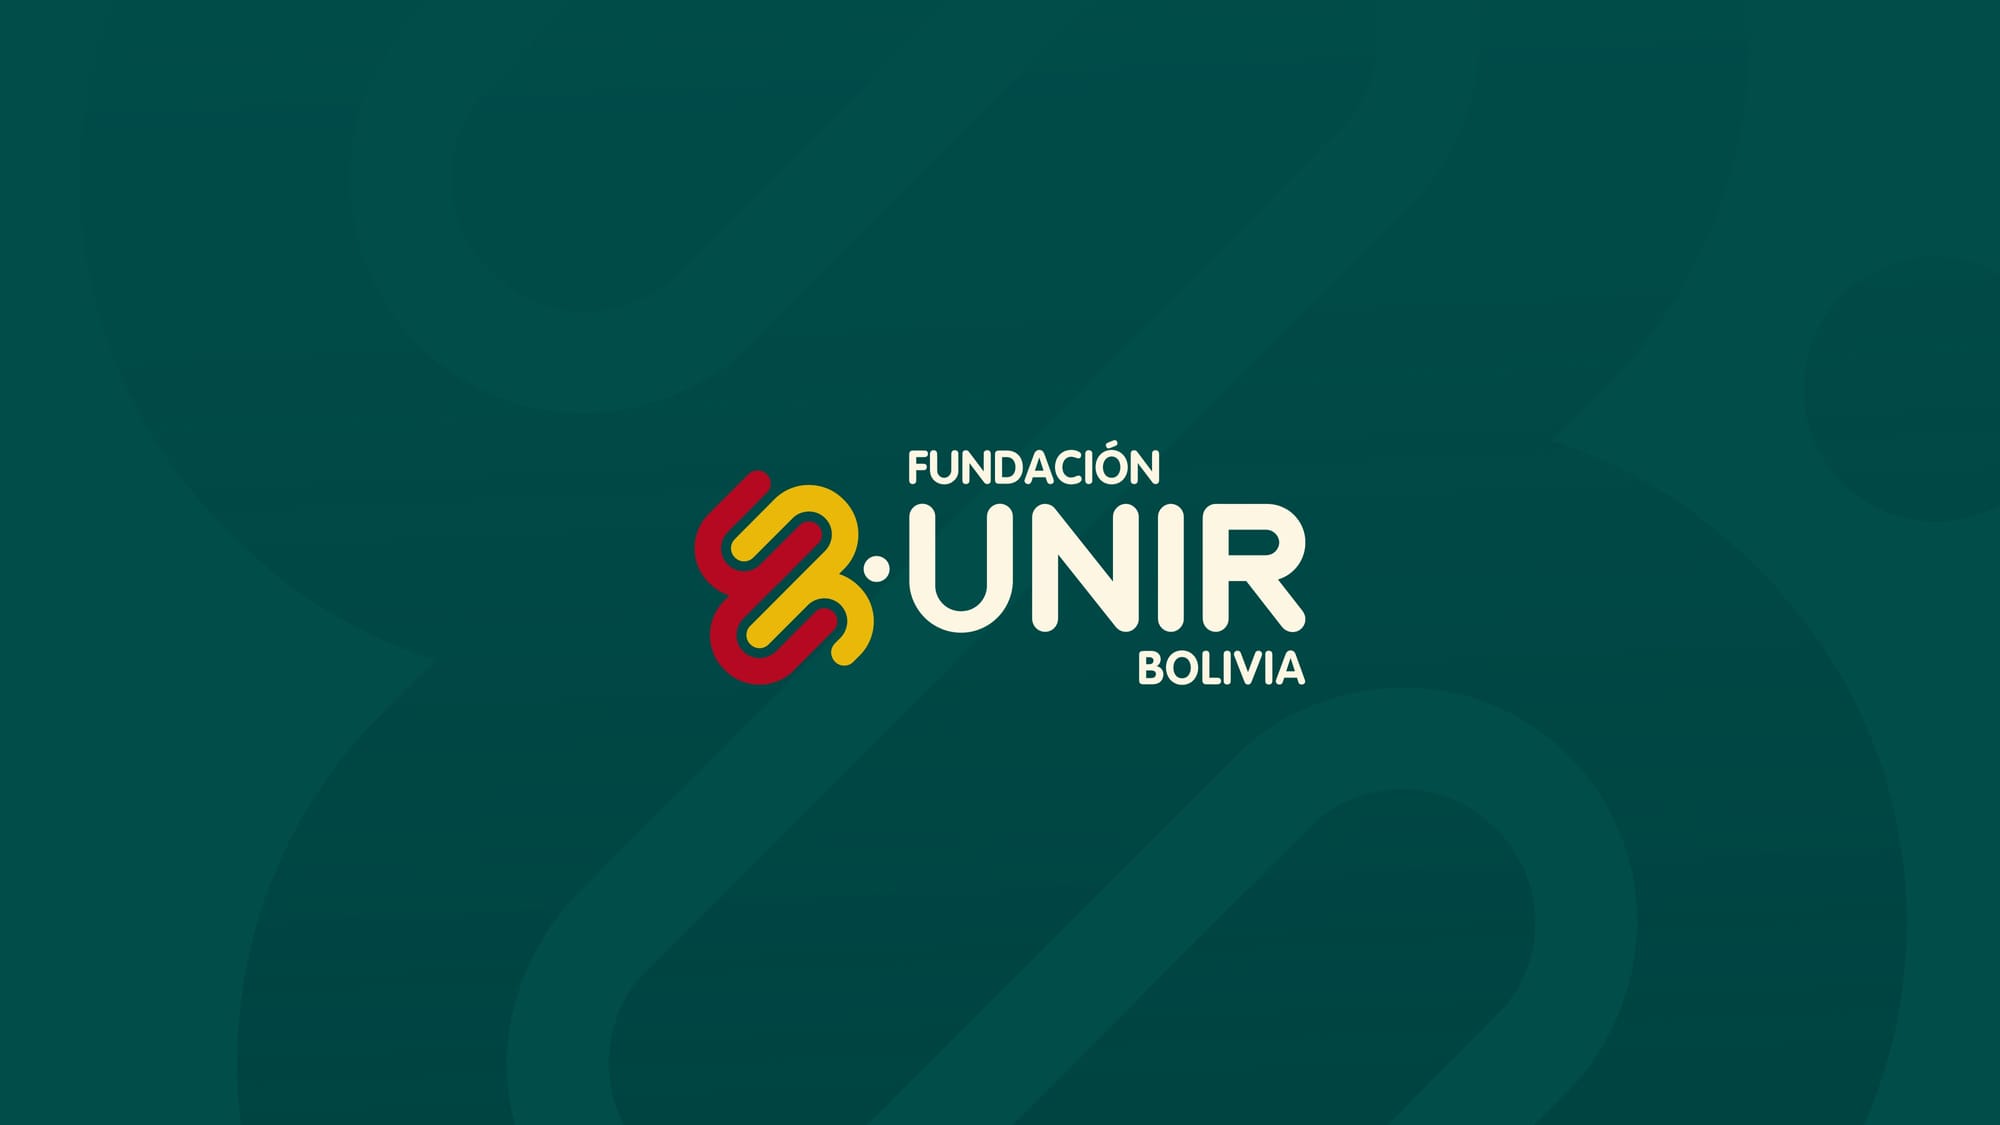 Fundación Unir Bolivia post image